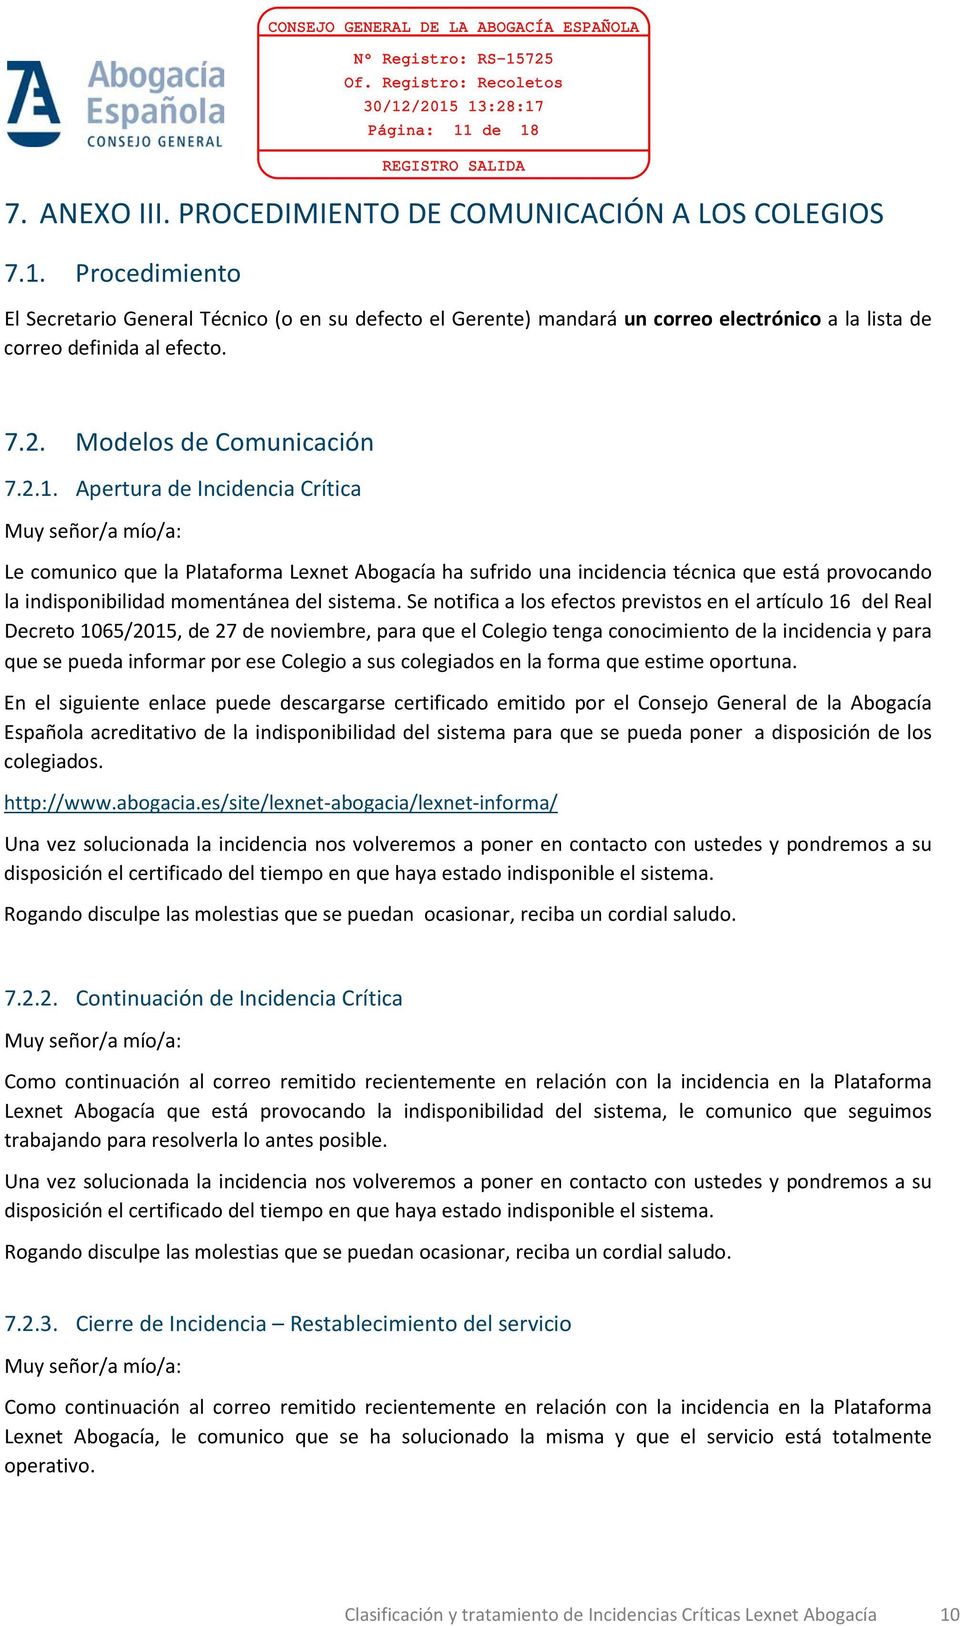 7.2. Modelos de Comunicación 7.2.1.